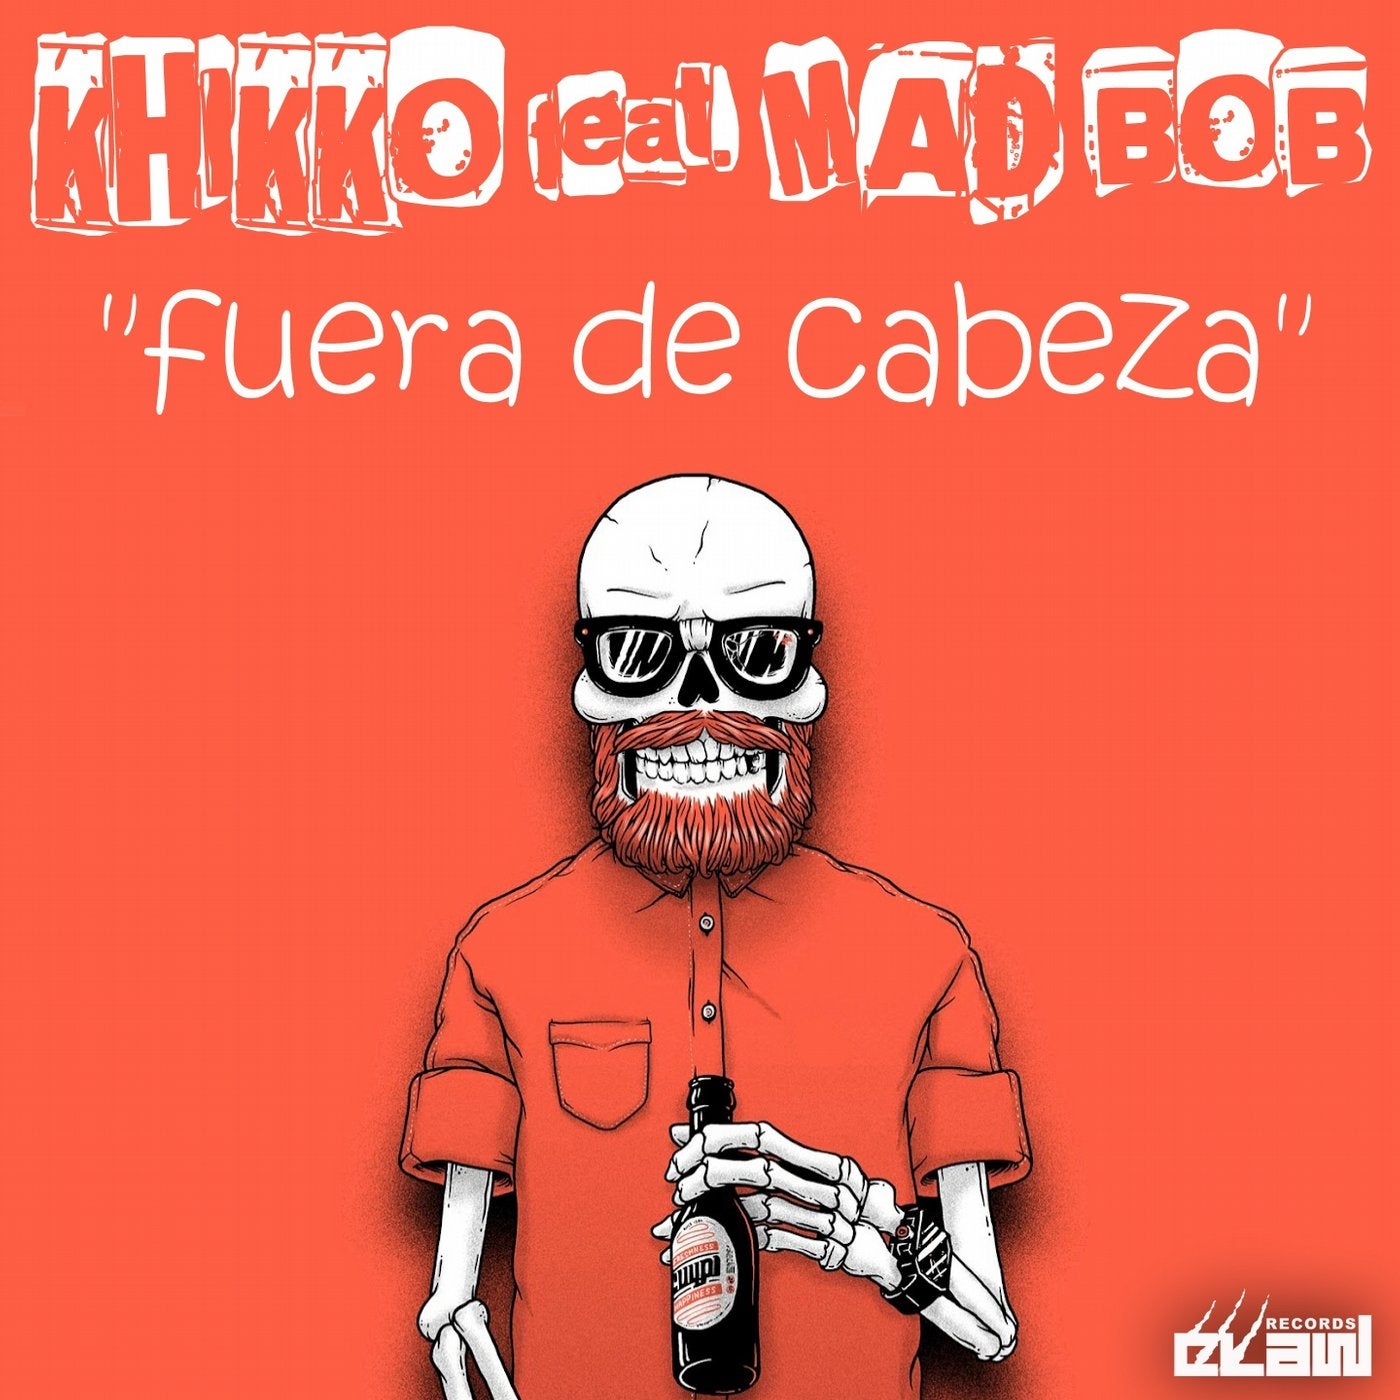 Fuera de Cabeza (feat. Mad Bob)